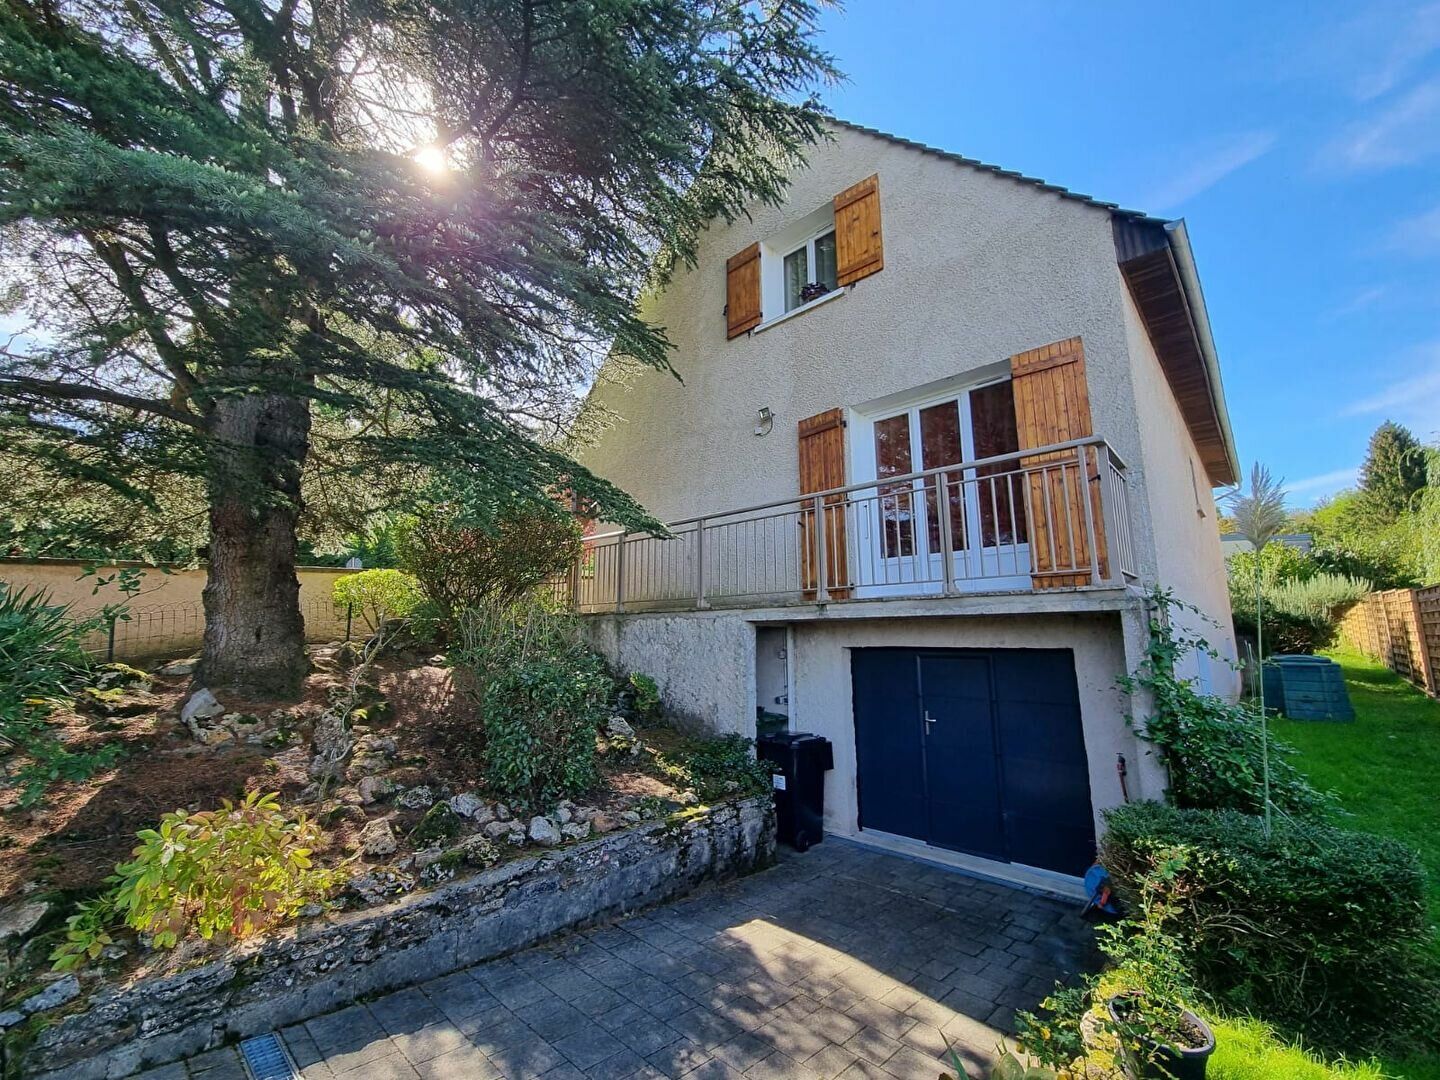 Maison à vendre 5 120m2 à Saâcy-sur-Marne vignette-3